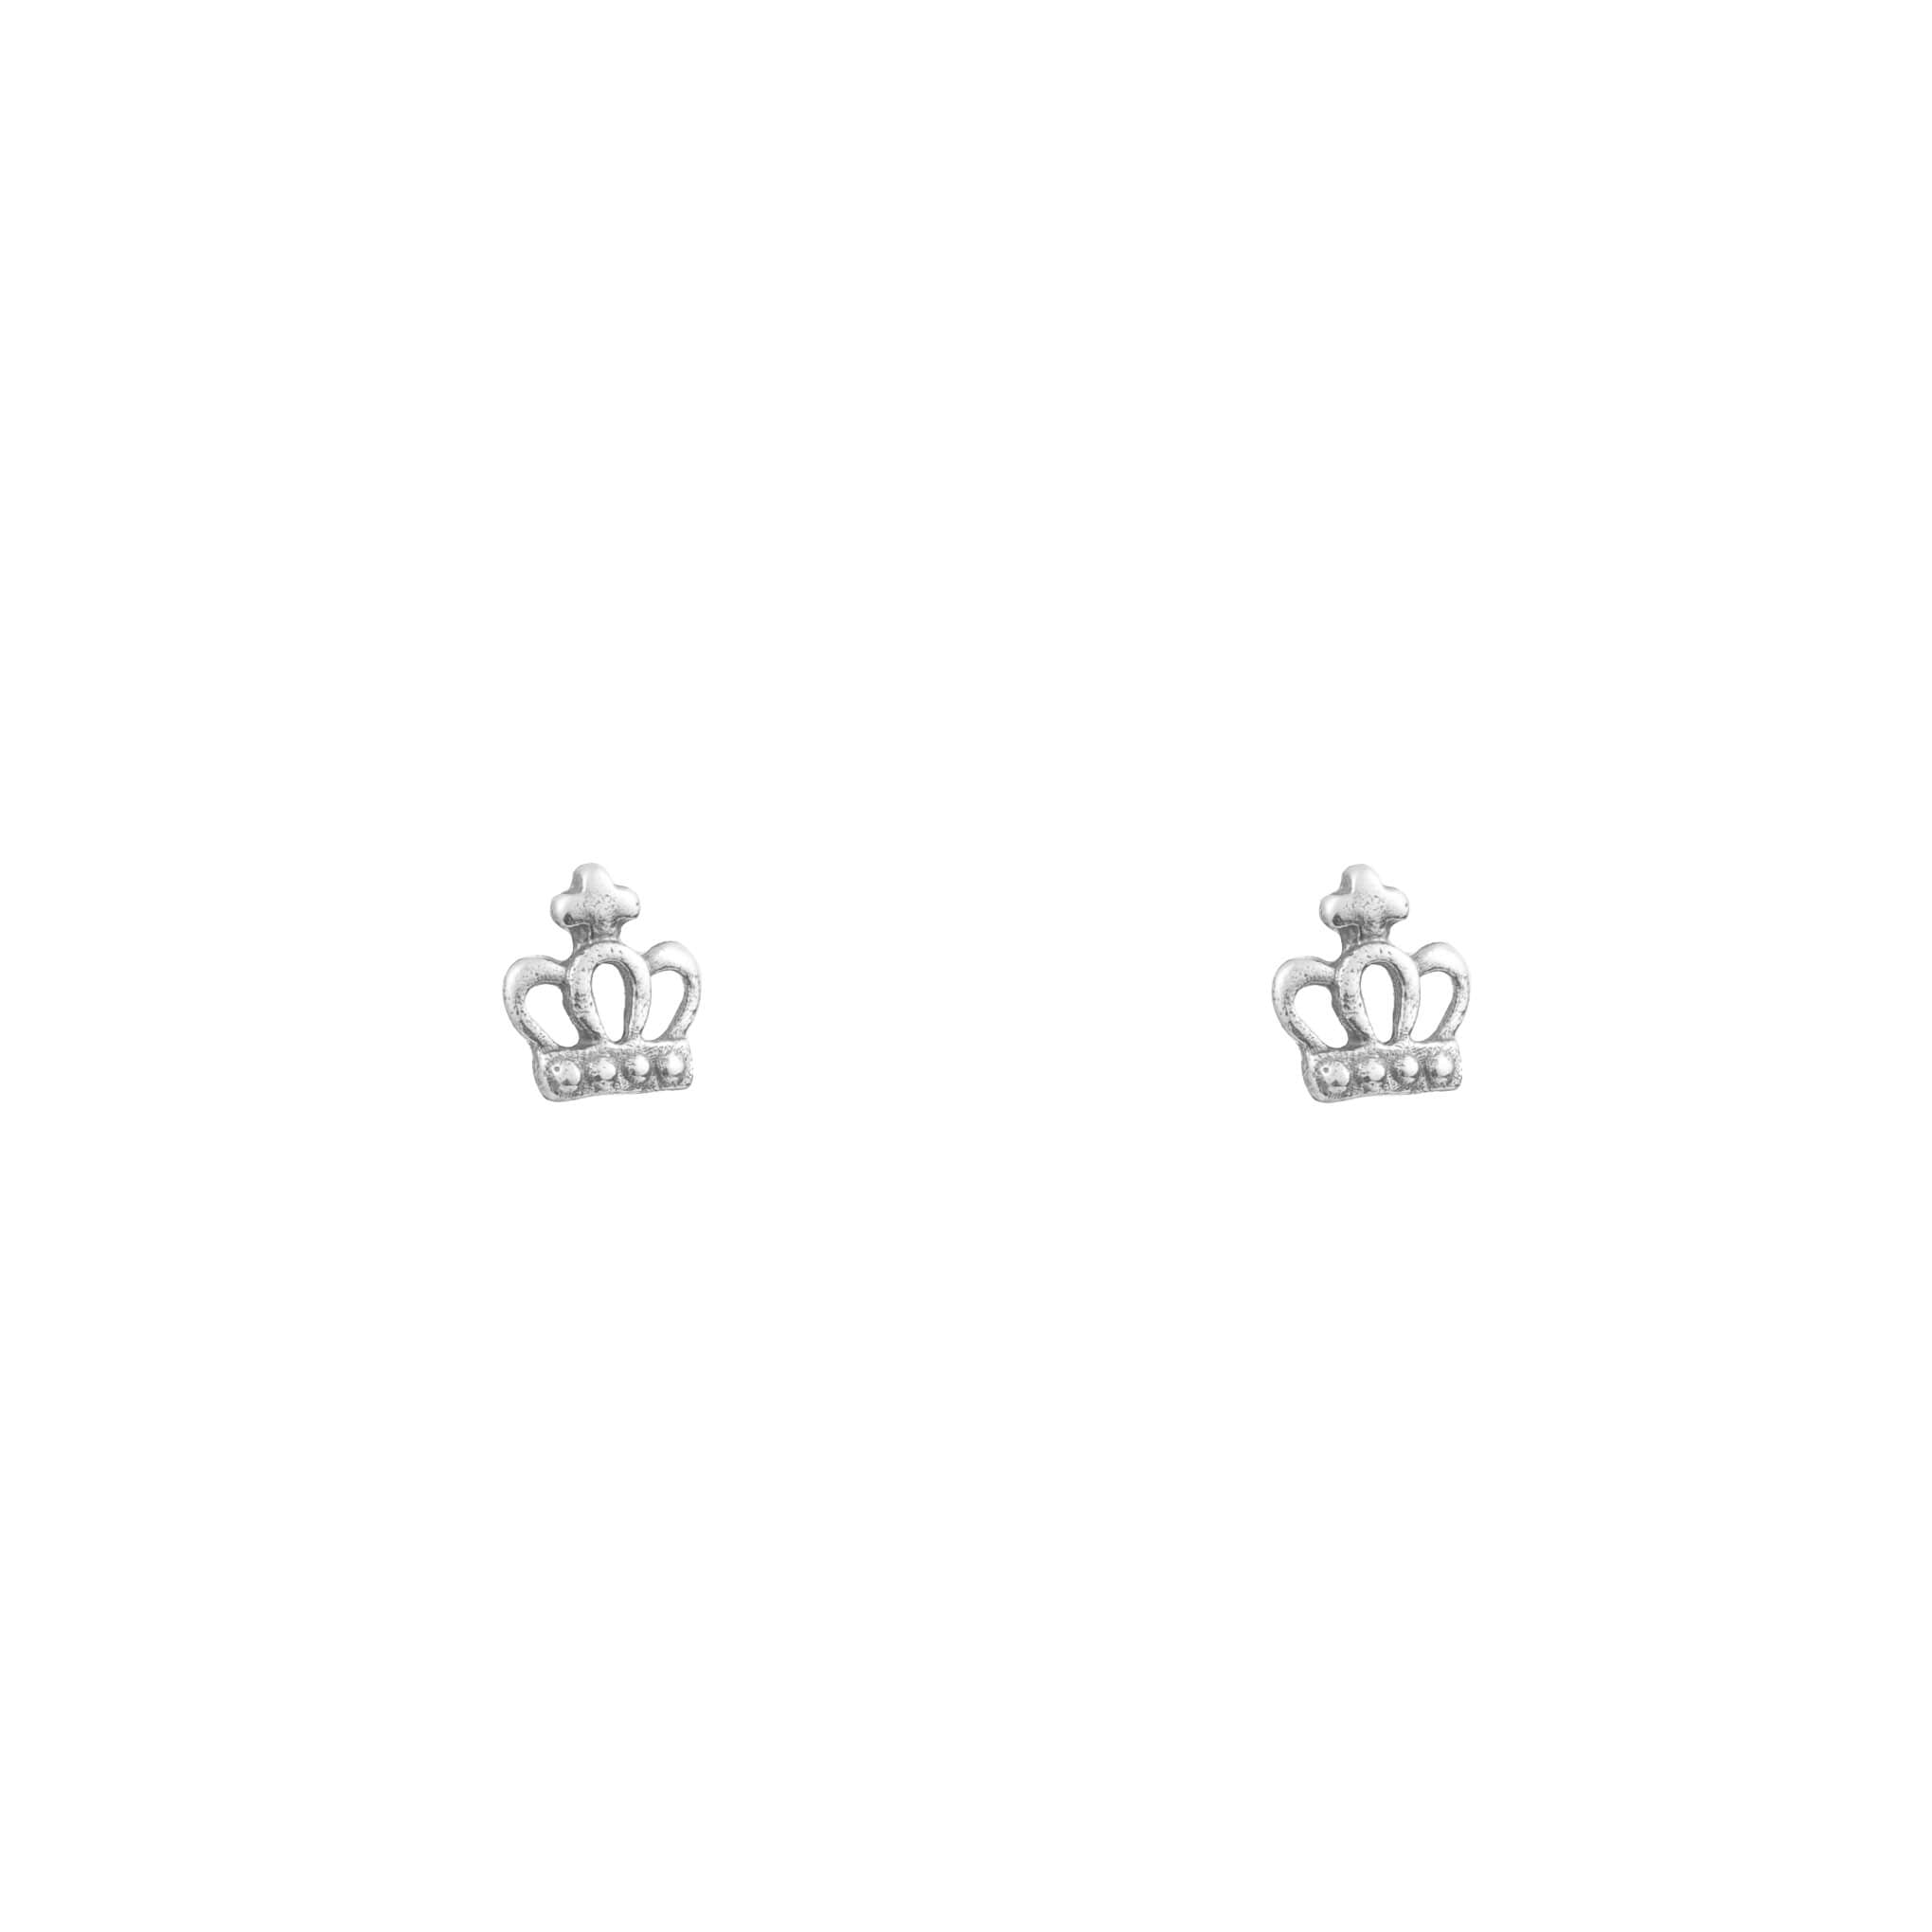 Sterling silver mini crown earrings